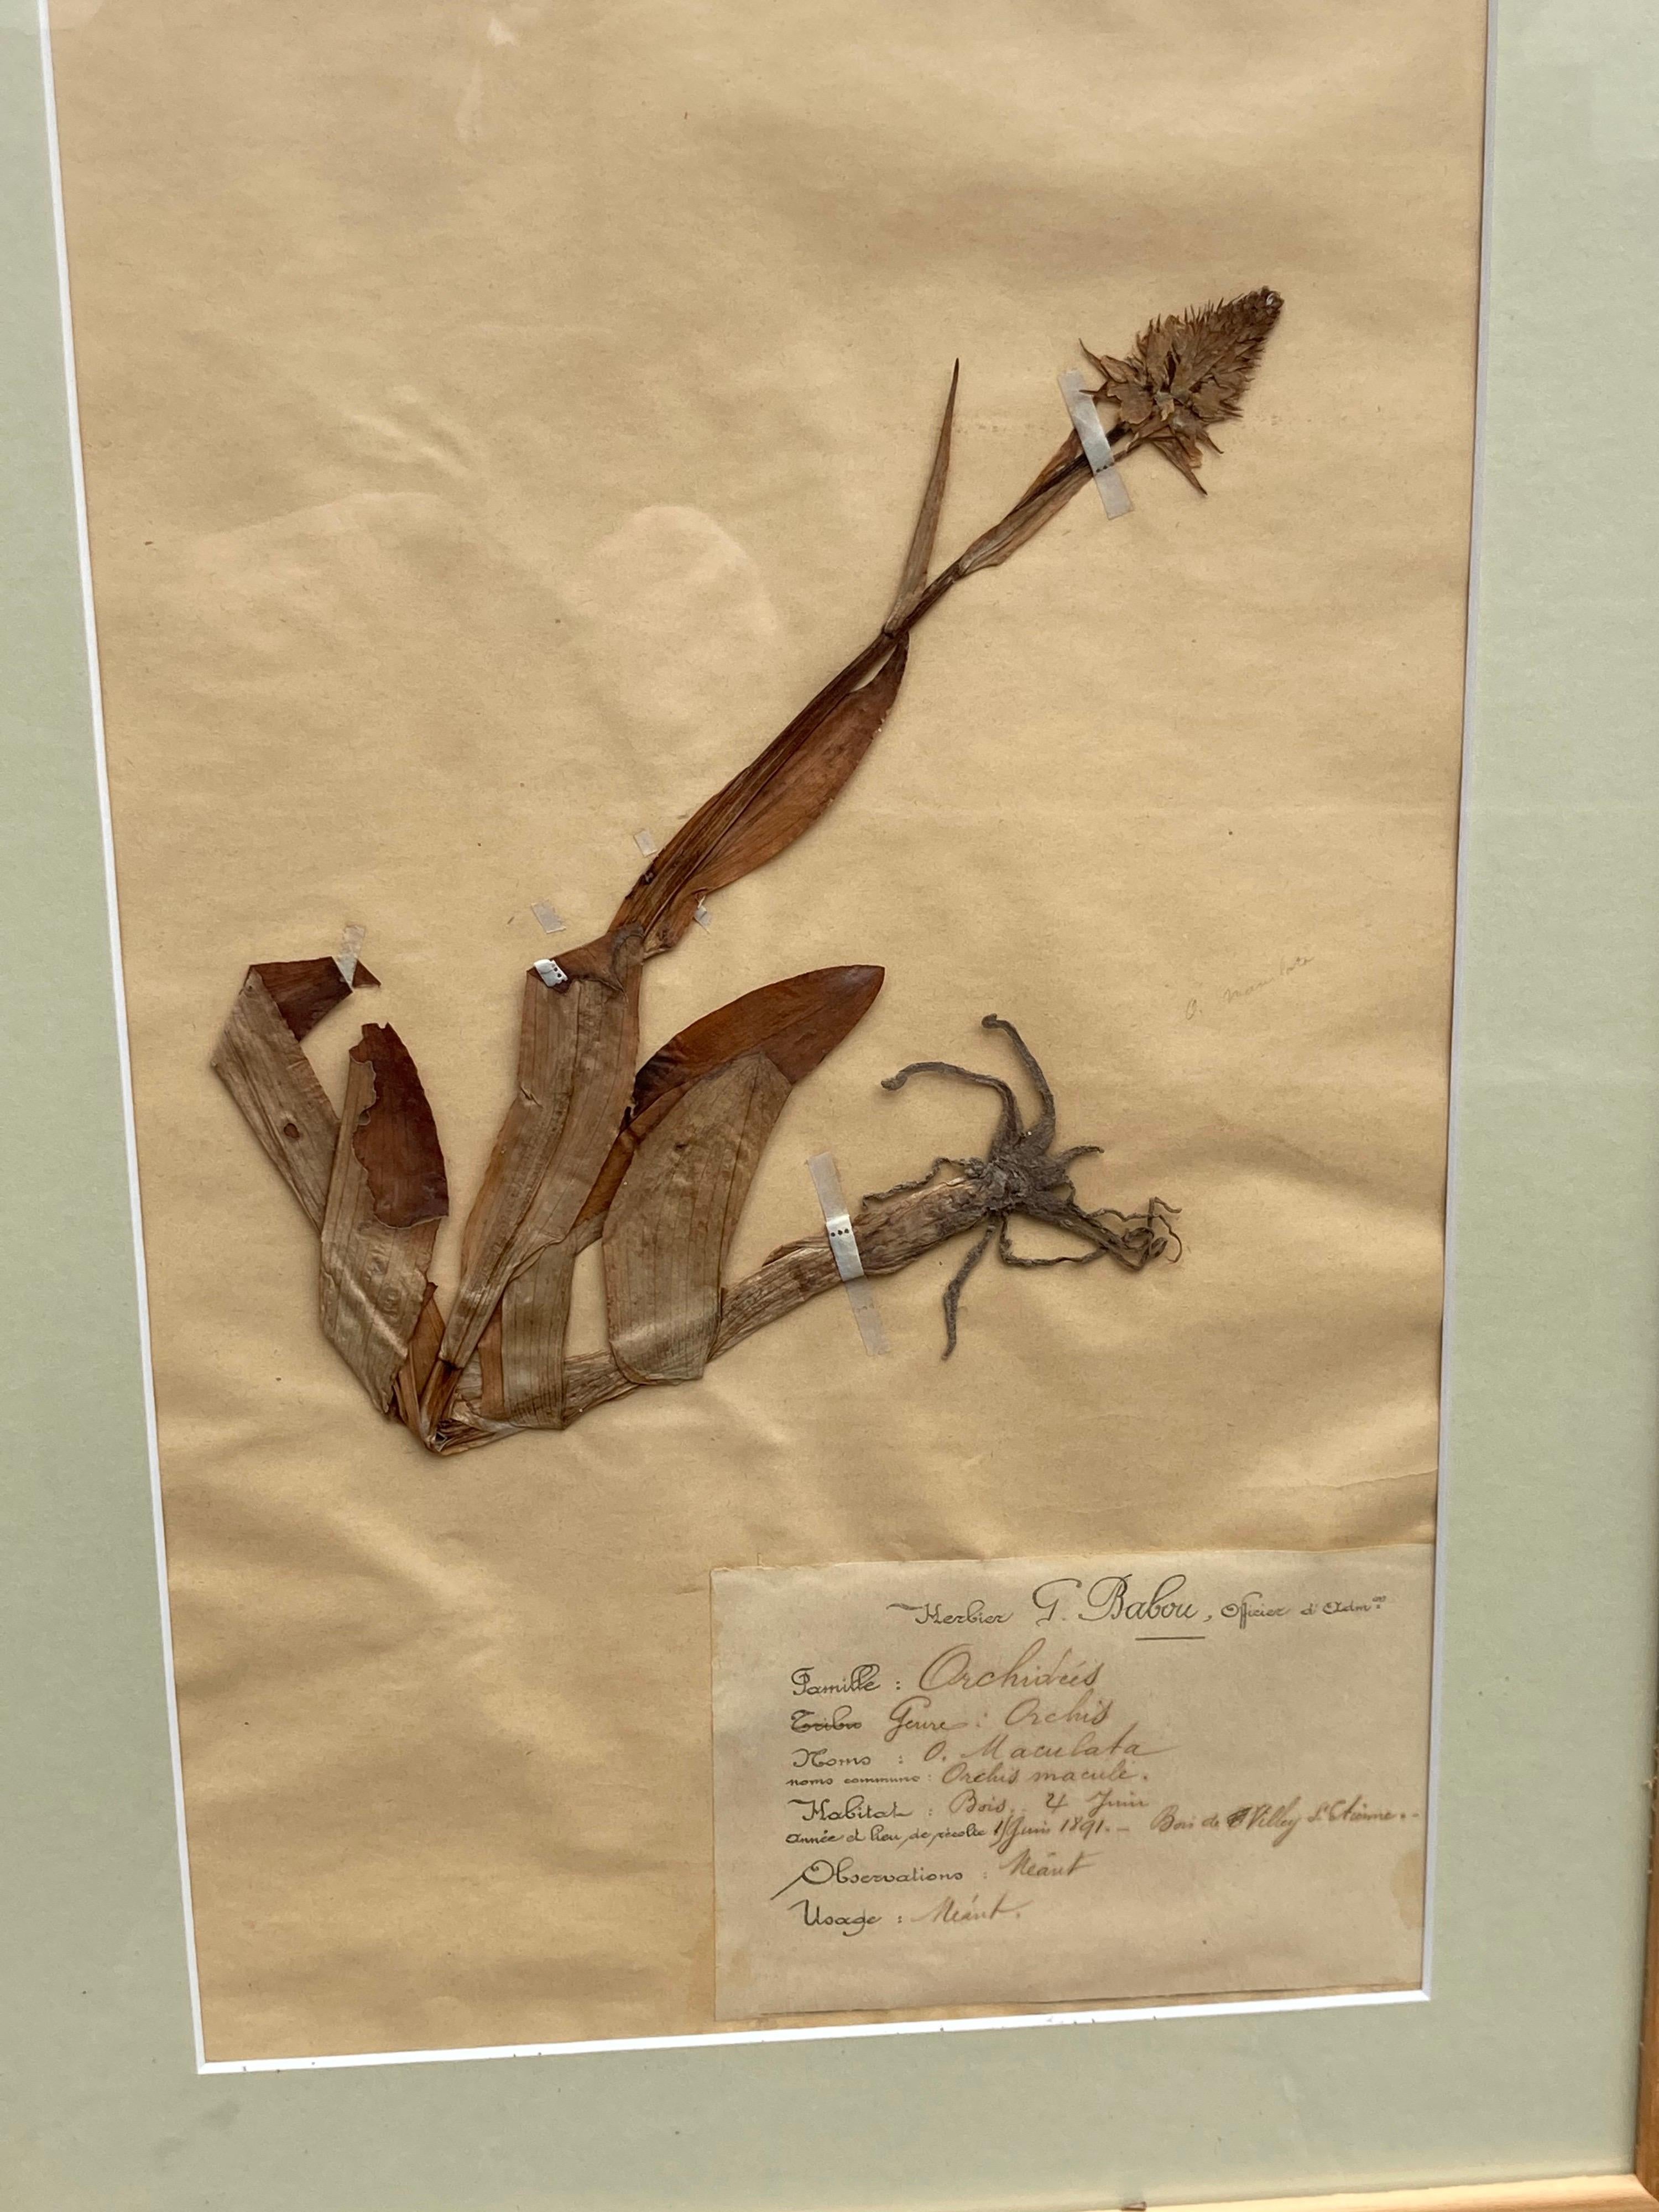 spécimens de plantes séchées françaises du 19ème siècle... signés par G. Babou, datés et méticuleusement catalogués, y compris leur localisation en France.... un merveilleux ensemble de 15.